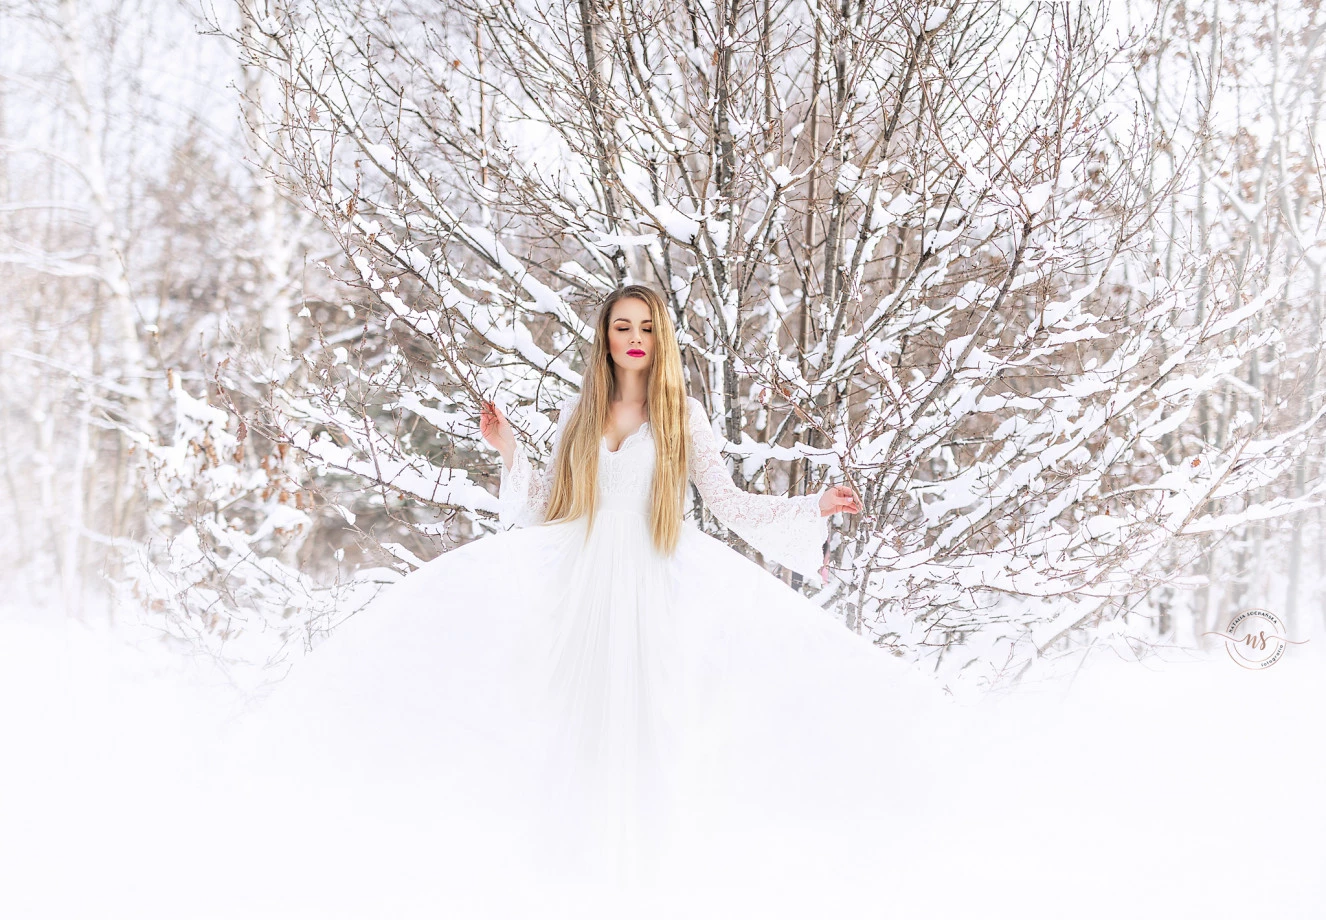 zdjęcia gdynia fotograf sochanska-natalia portfolio zimowe sesje zdjeciowe zima snieg